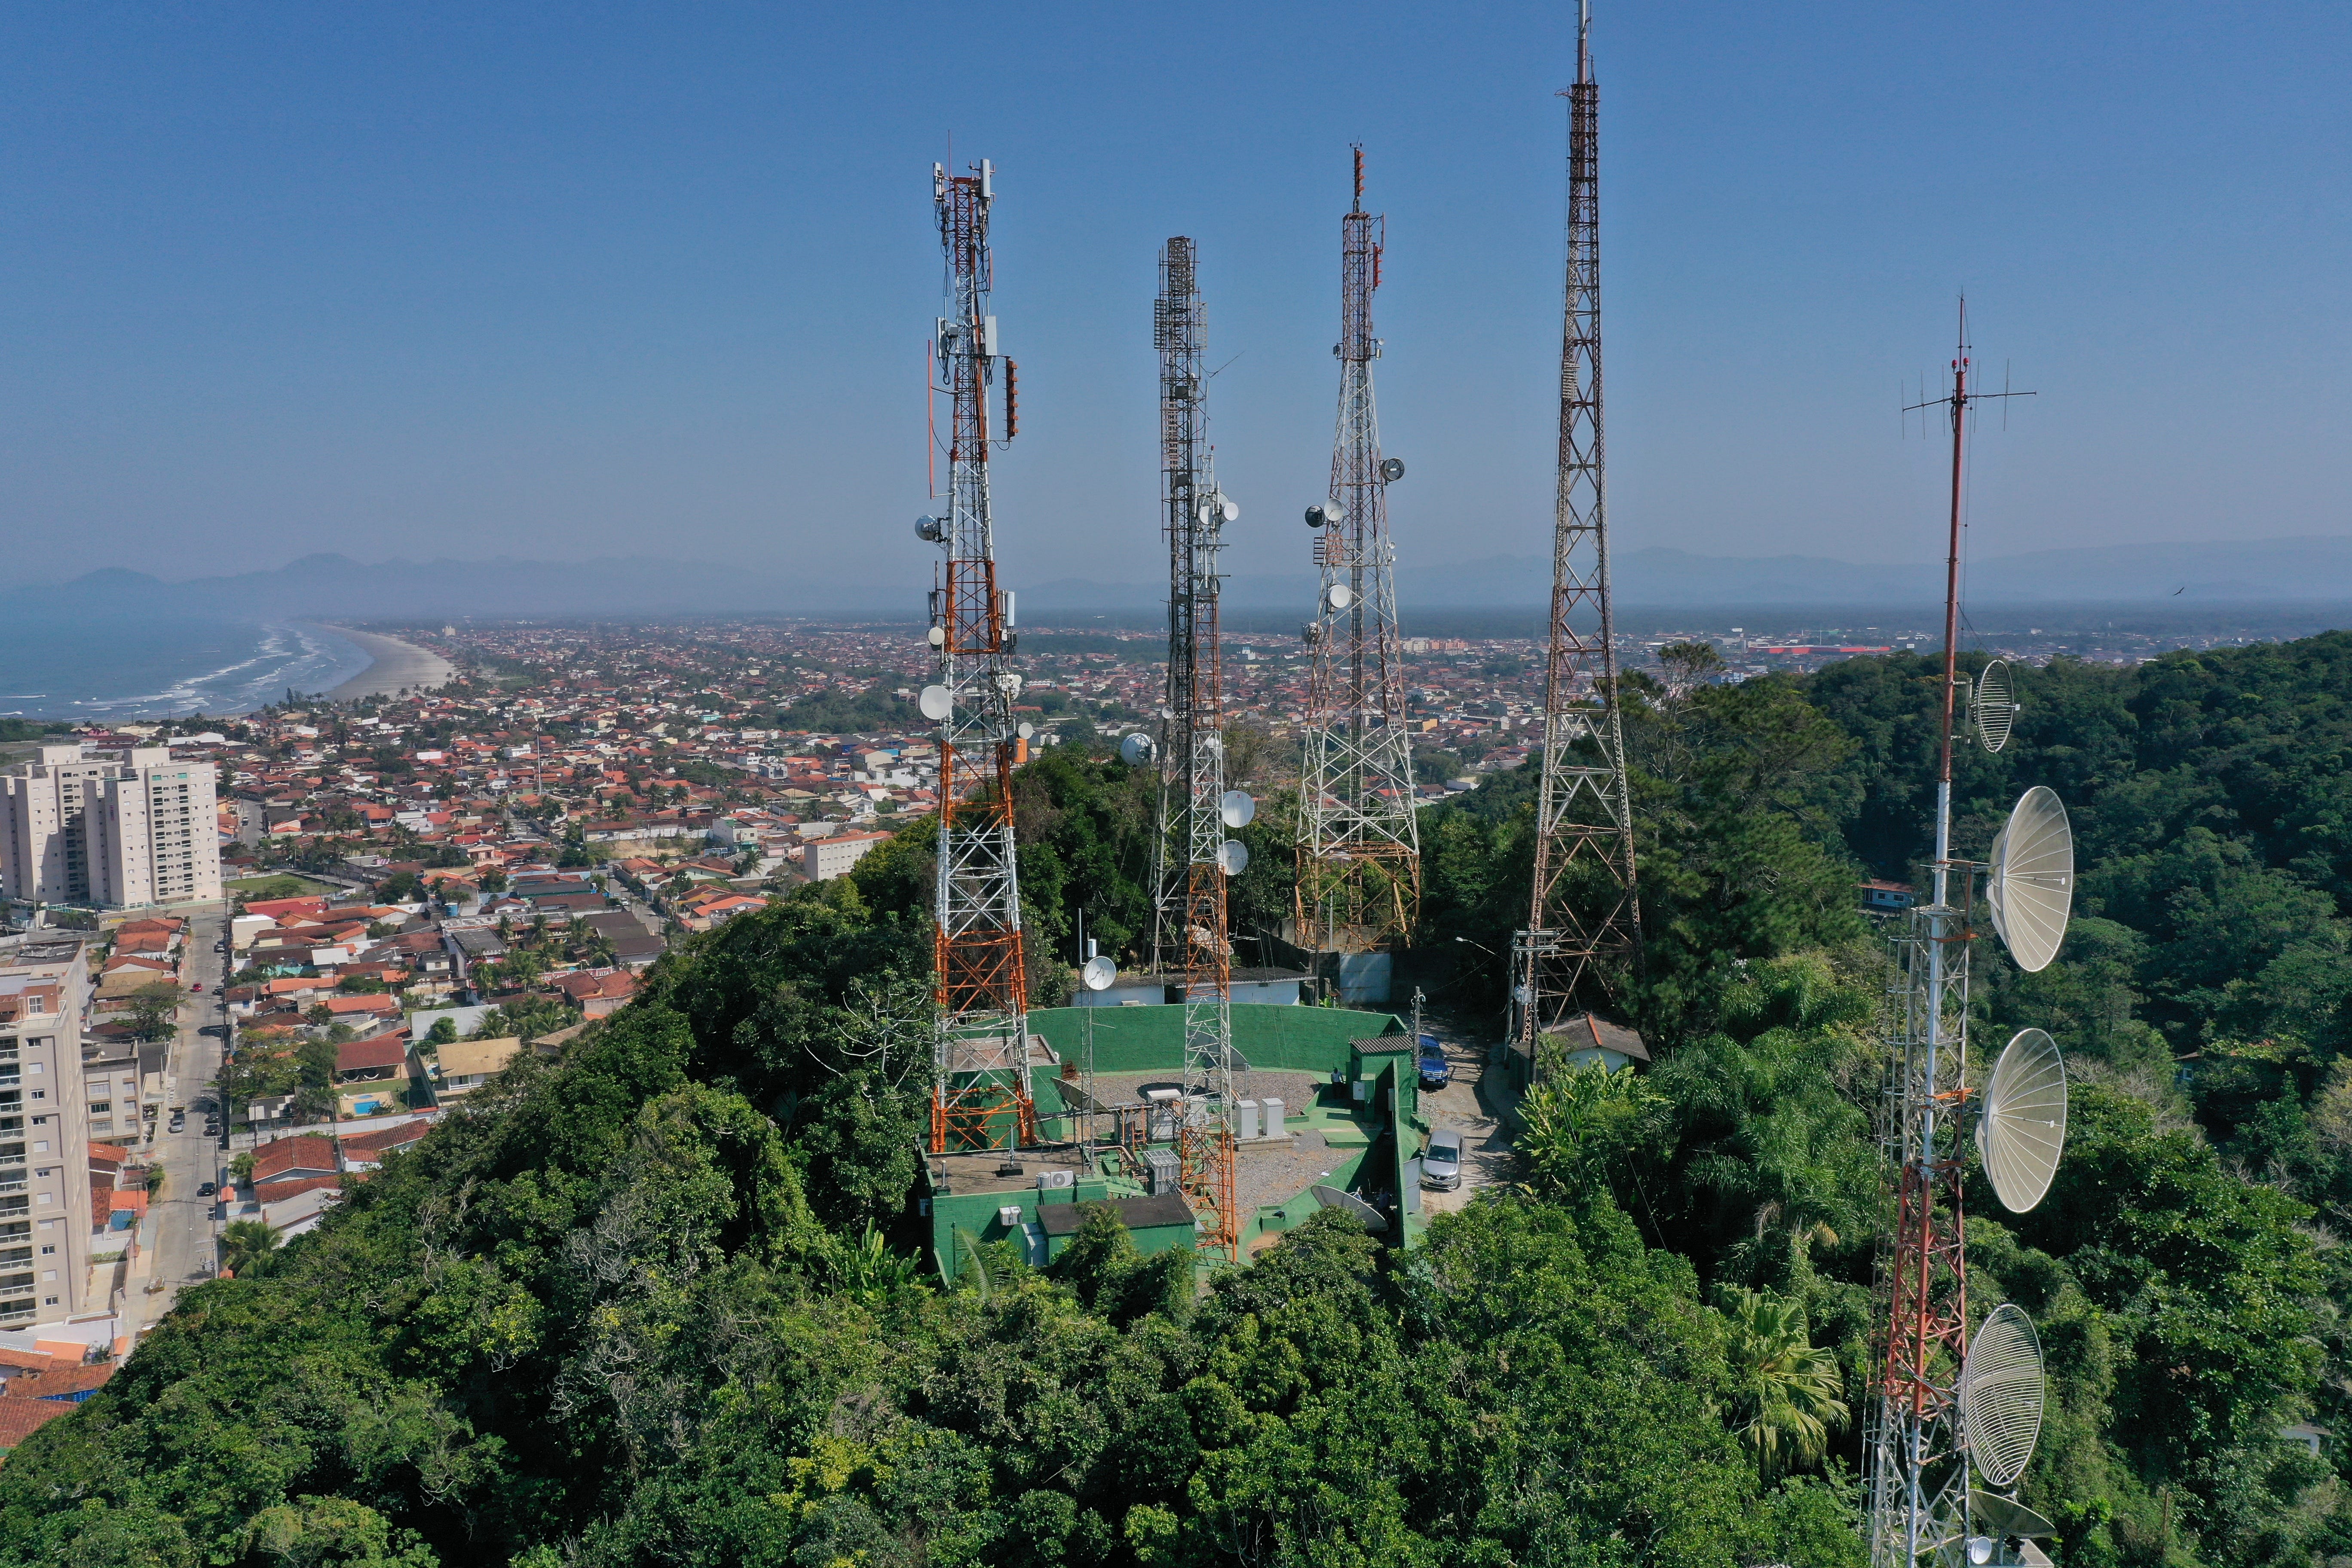 Conjunto de torres de telecomunicações em Itanhaém — SP 10/08/2020